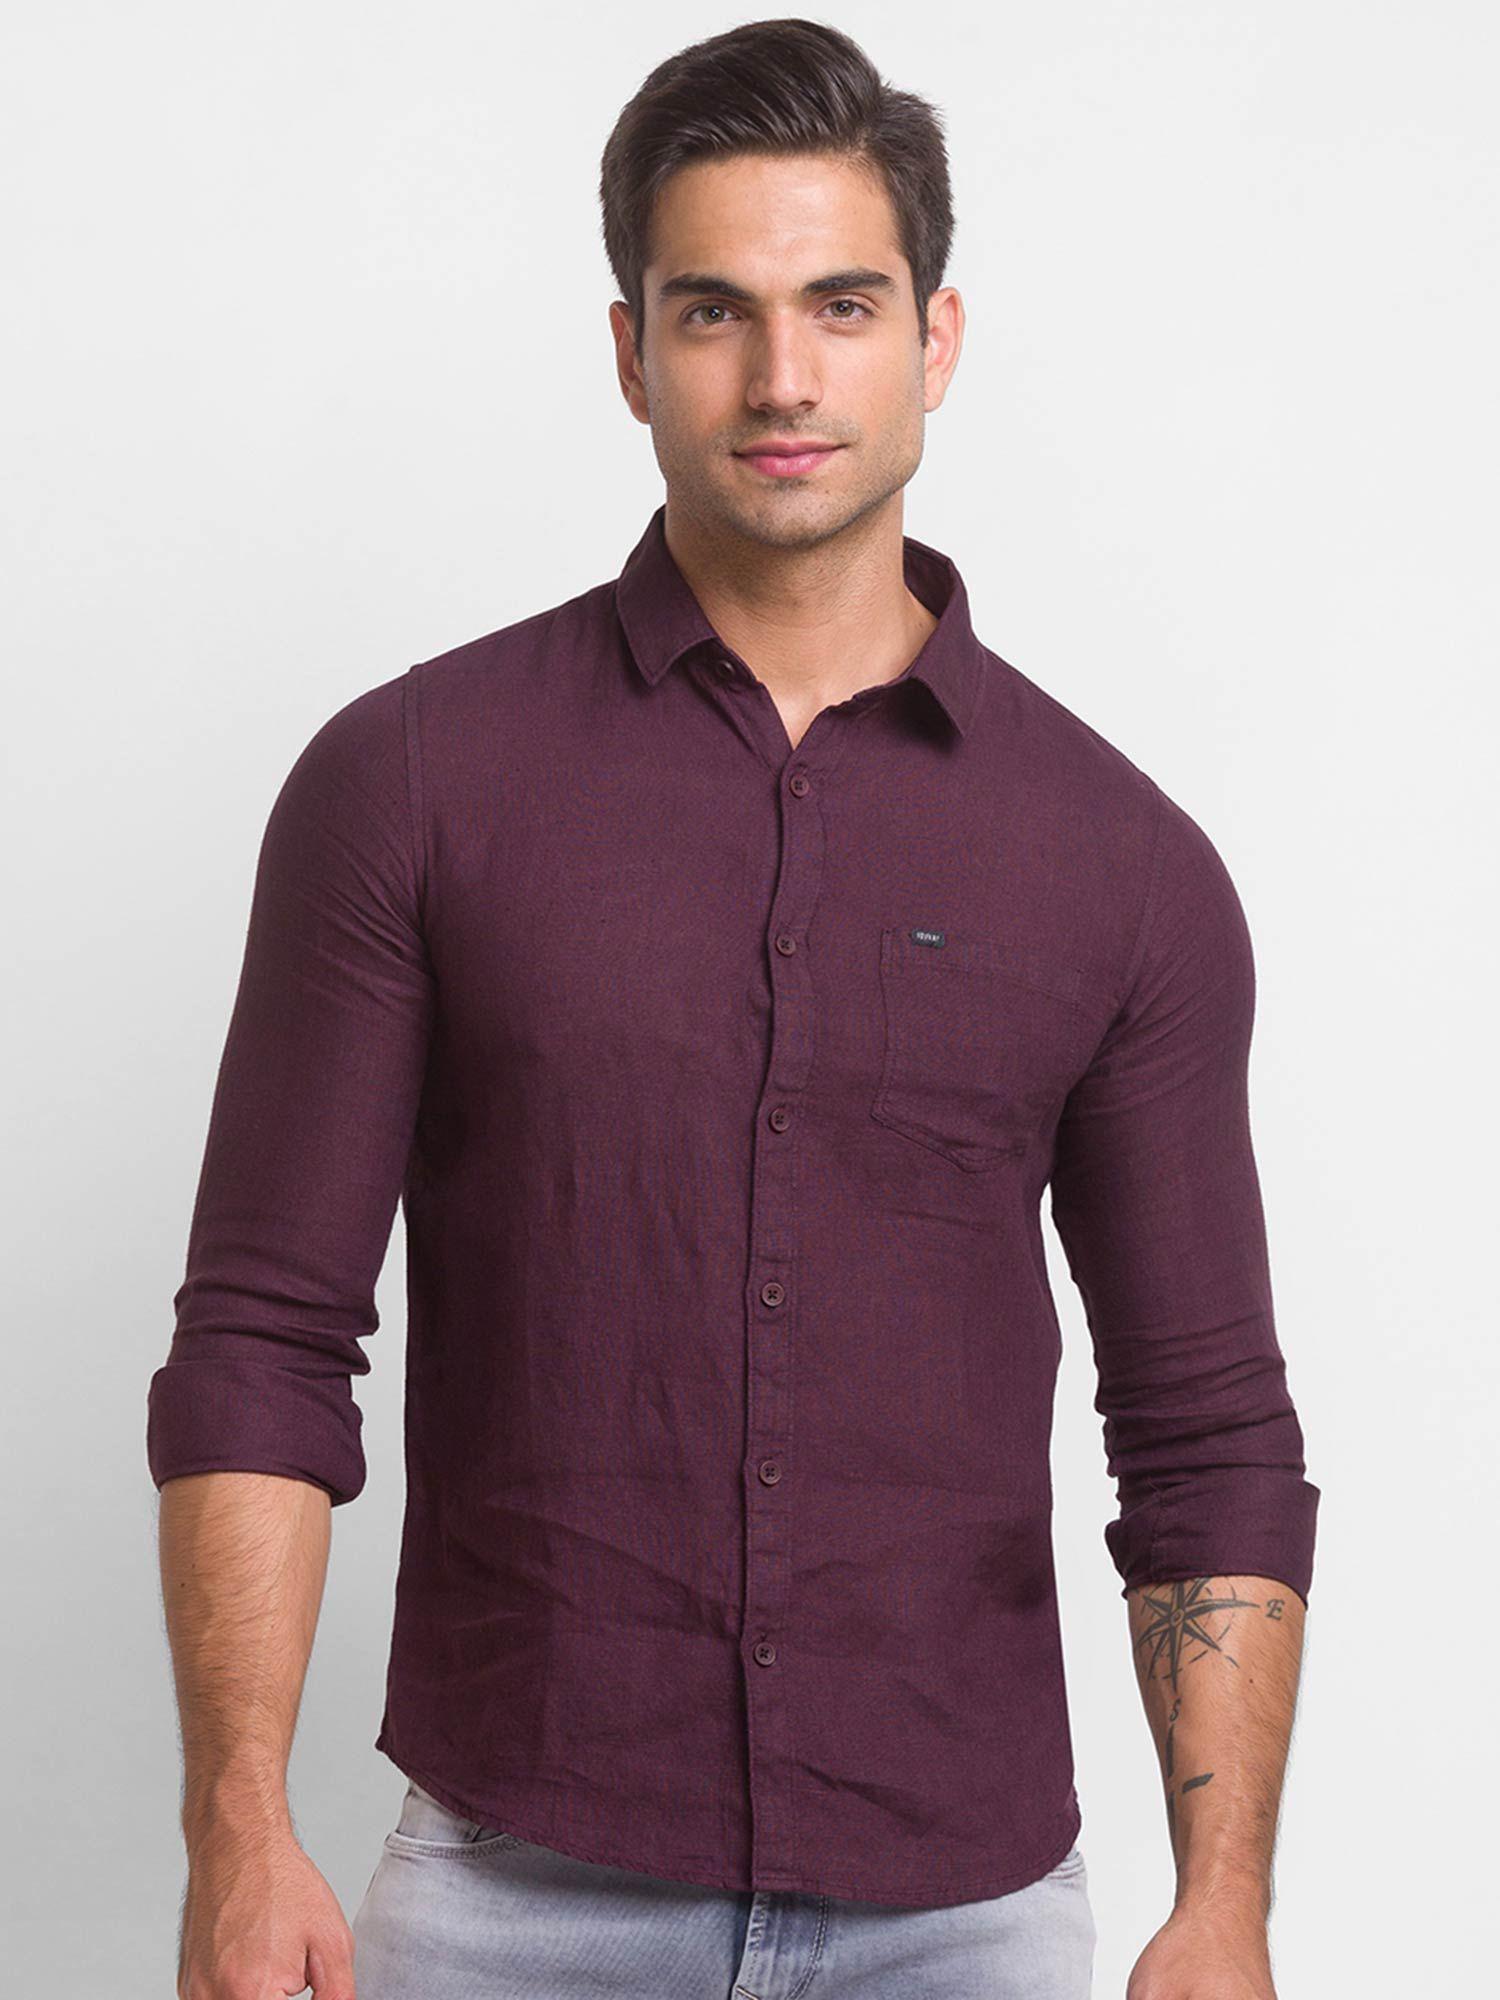 wine red cotton full sleeve plain shirt for men